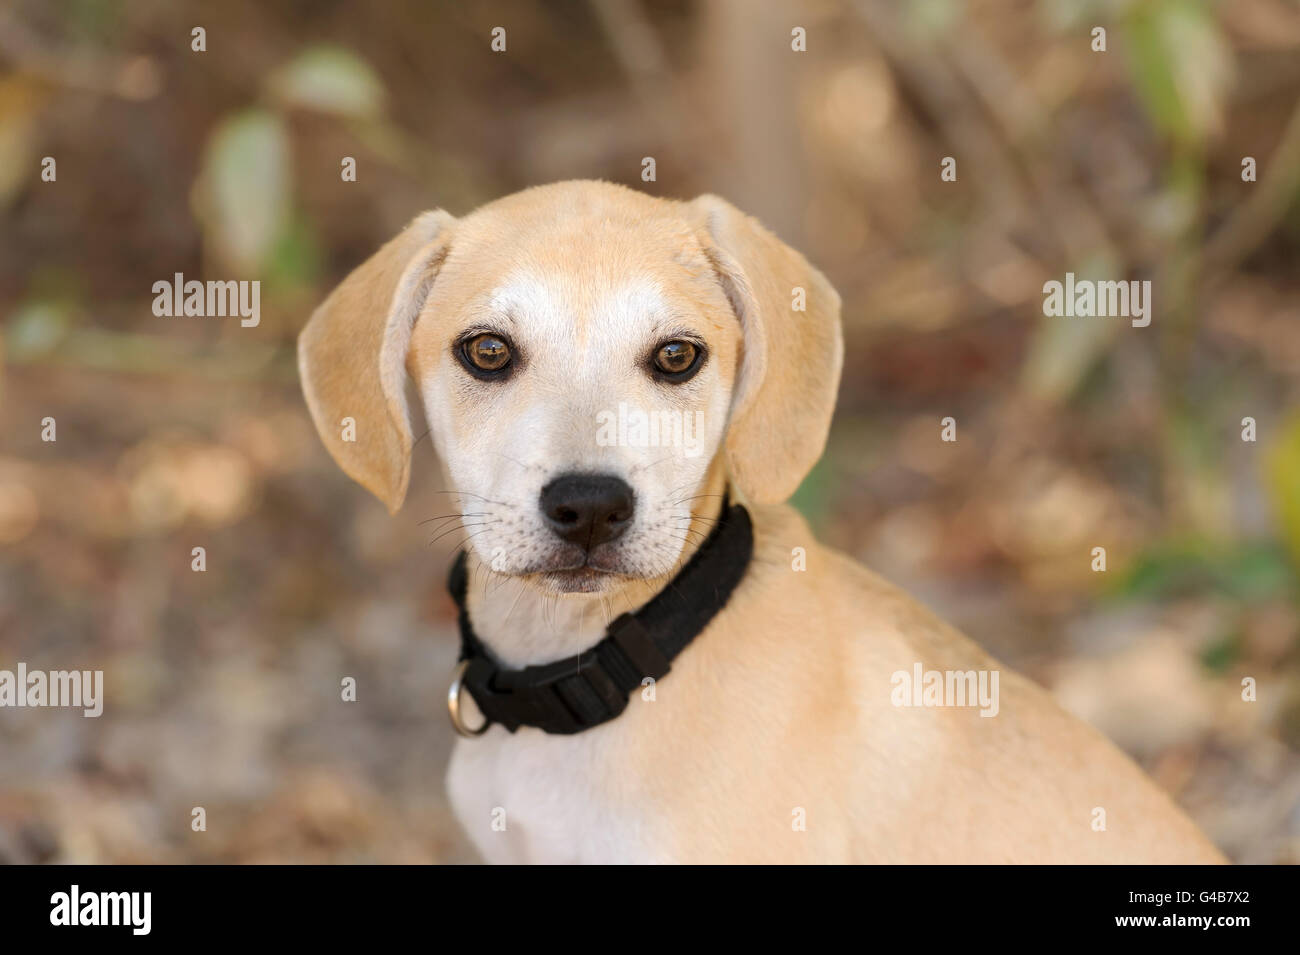 Chiot Mignon est un gros plan d'une adorable chiot chien vous regarde avec ces grands yeux adorables. Banque D'Images